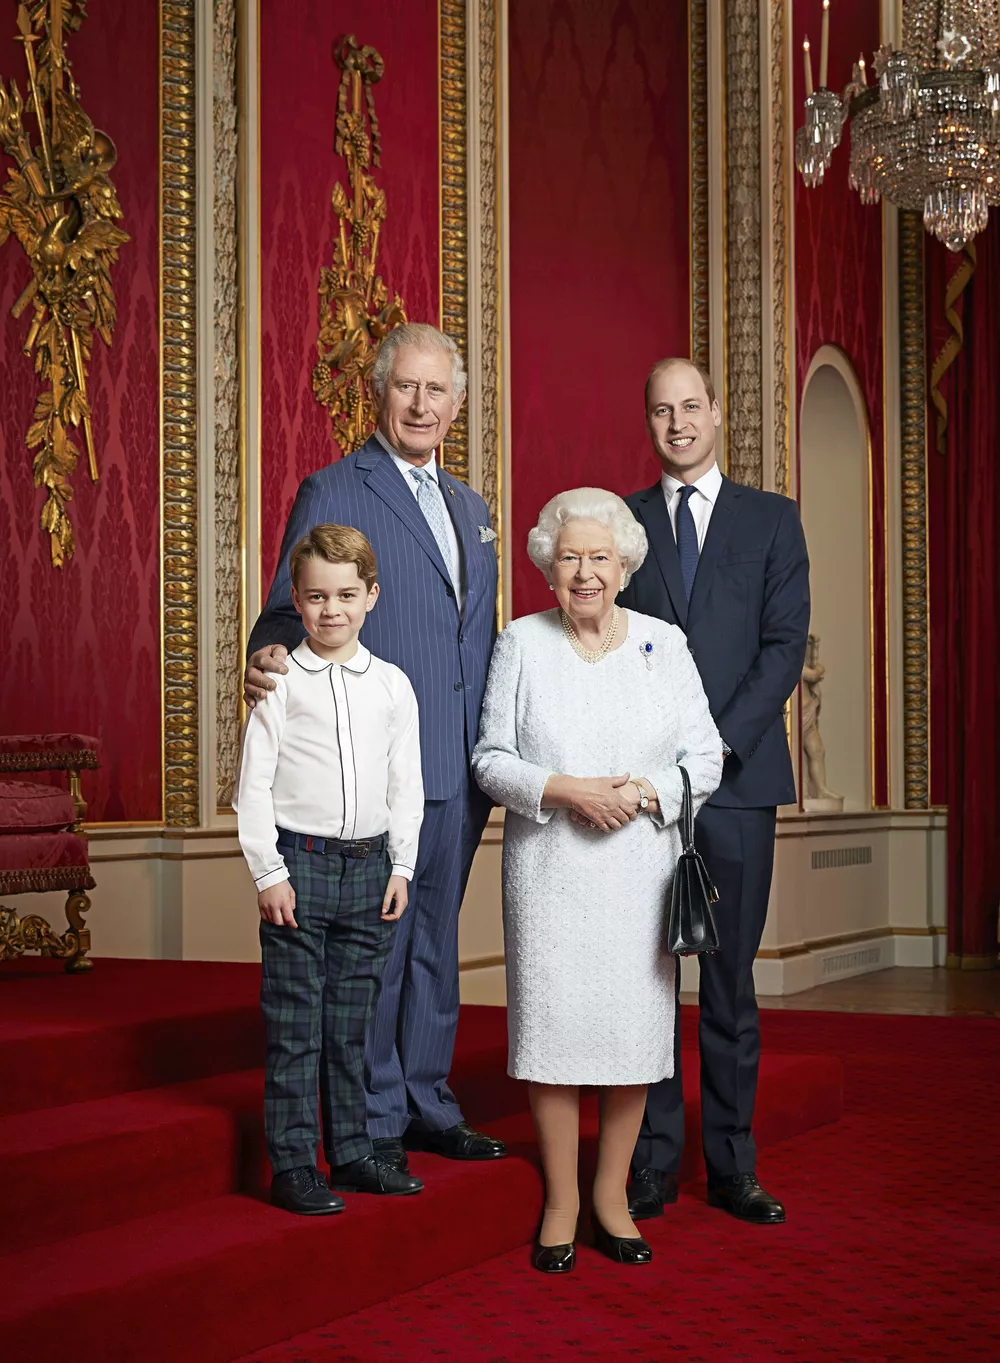 Елизавета II с тремя поколениями наследников престола: принцем Чарльзом, принцем Уильямом и принцем Джорджем